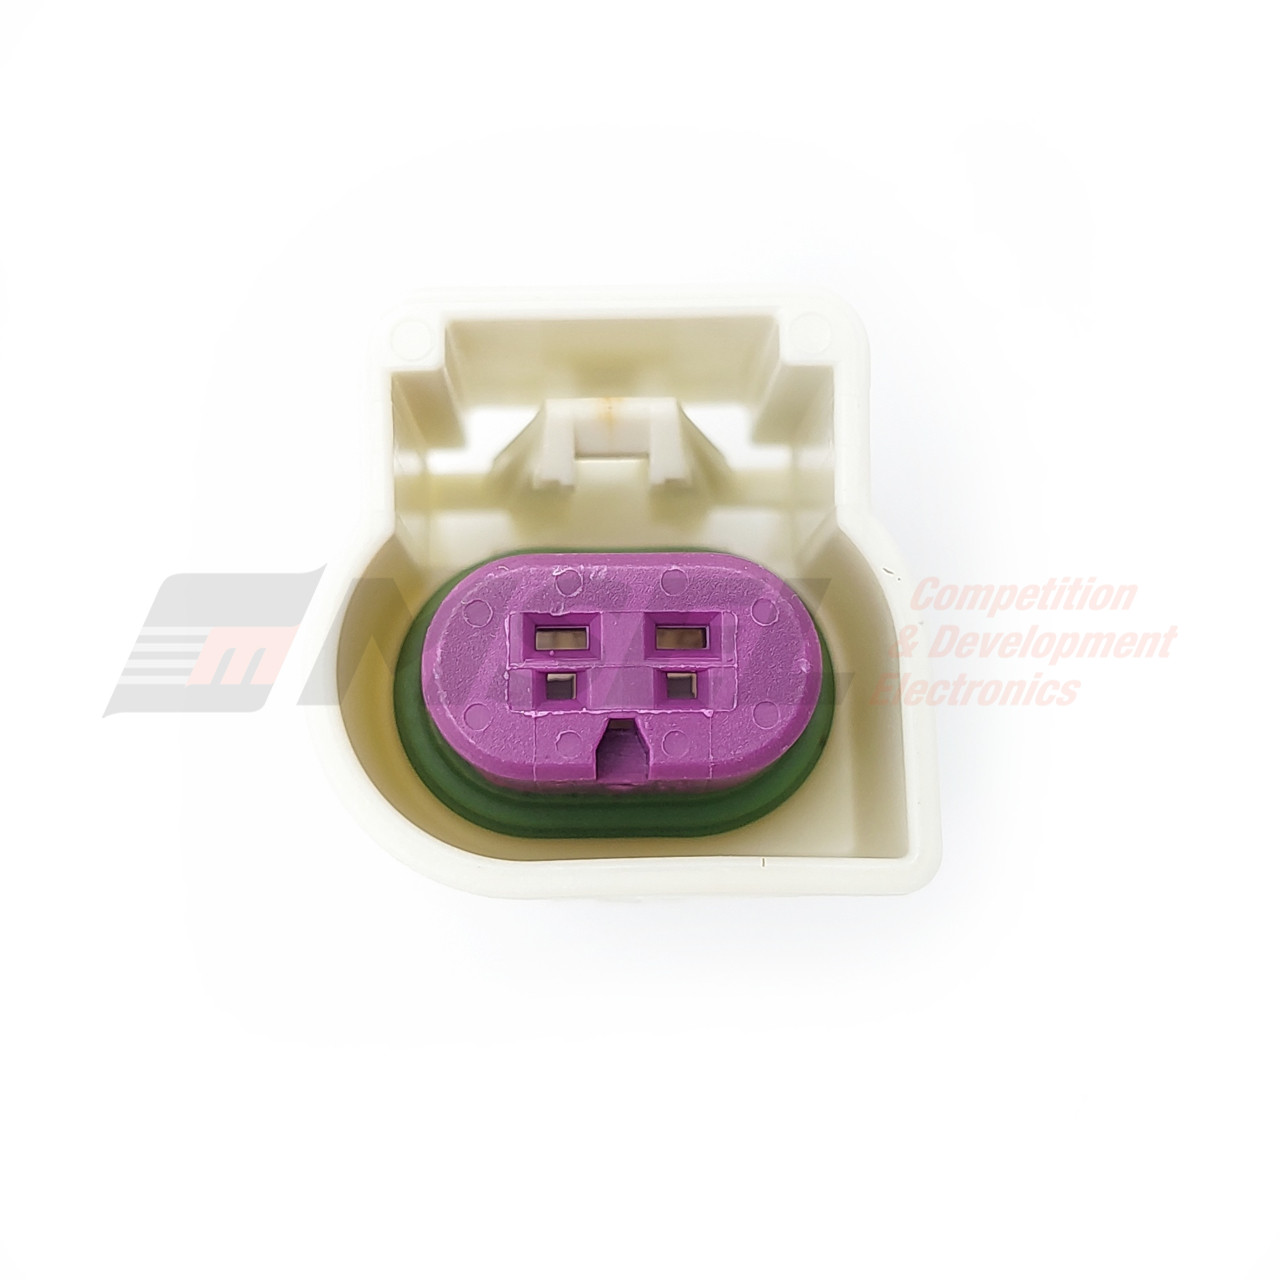 GM LS3/LS7 Knock Sensor Connector Kit - Motorsport Electronics Limited